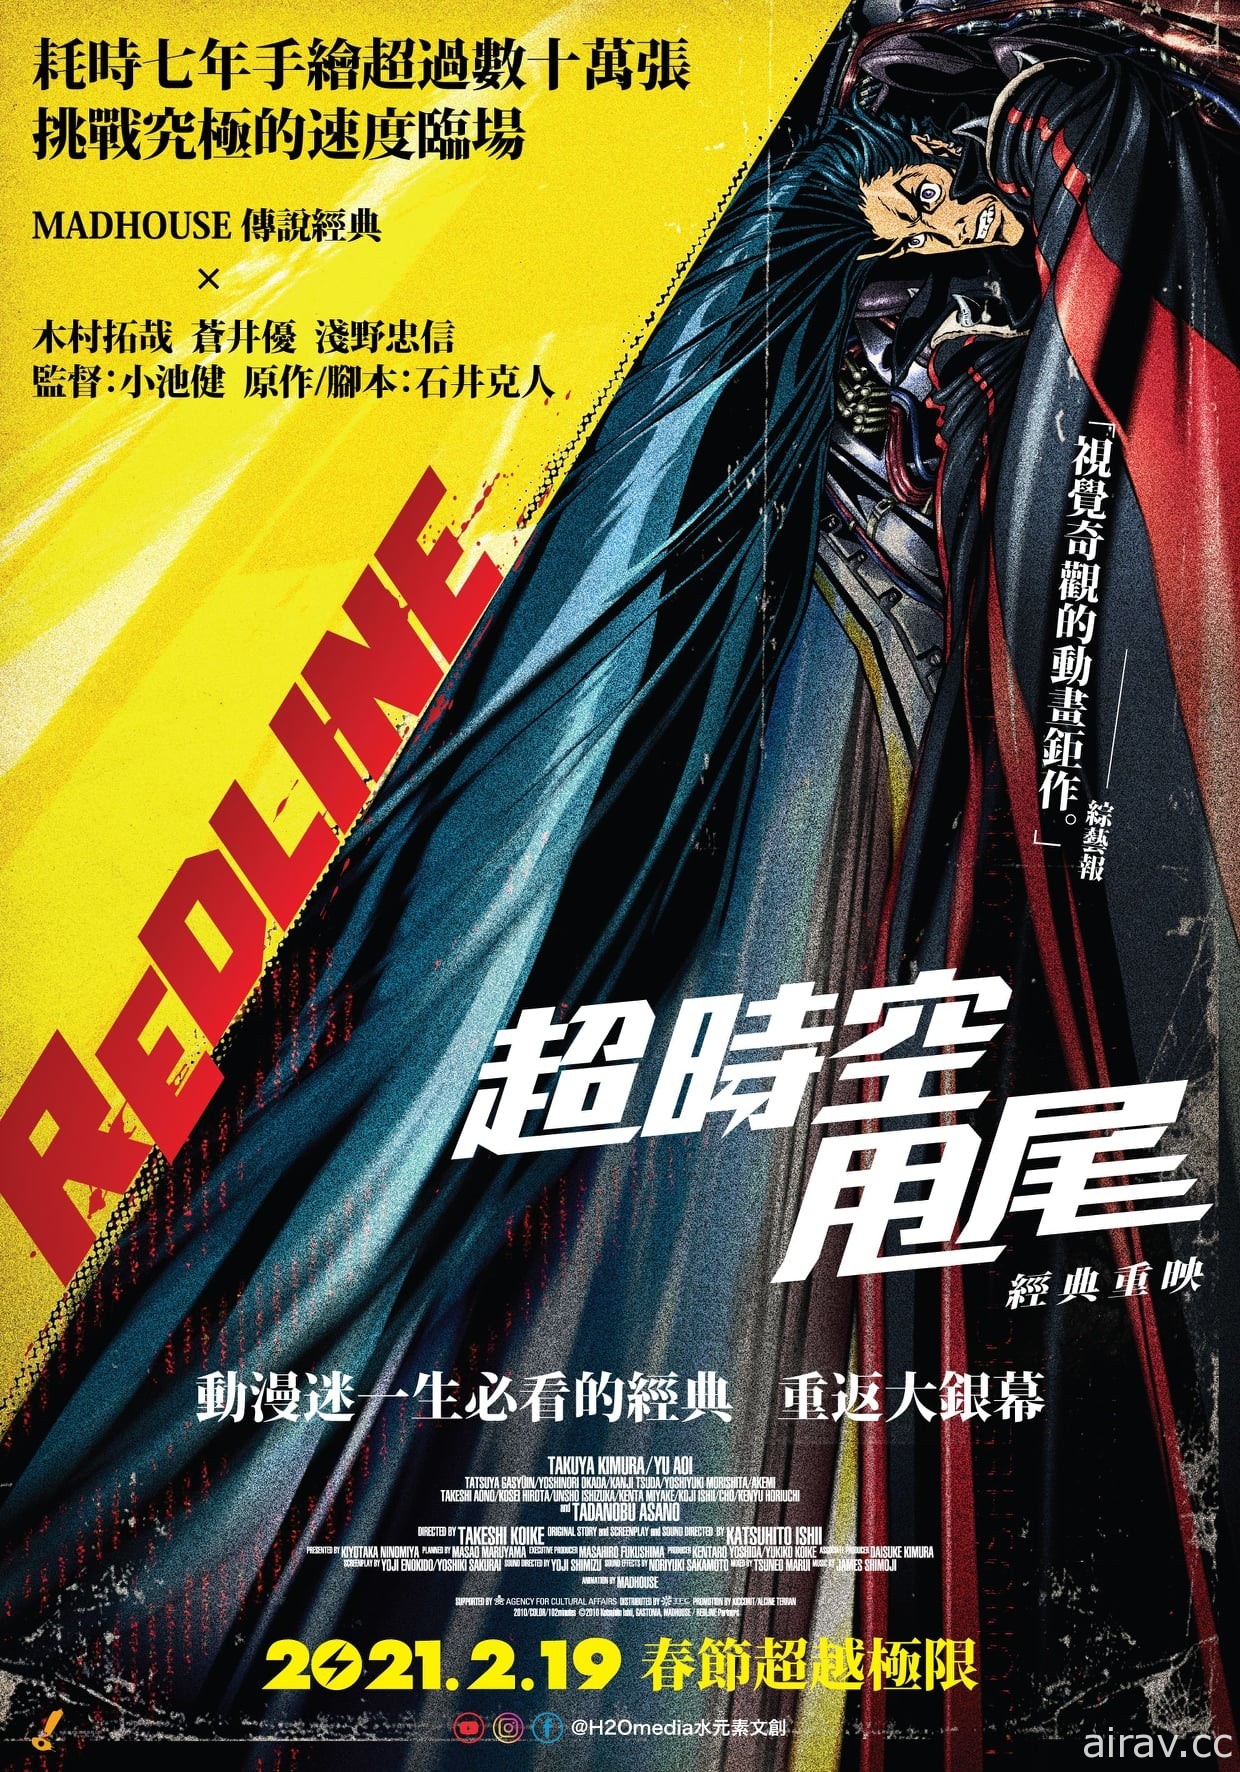 《超時空甩尾》釋出高畫質電影預告 2 月 19 日在台上映